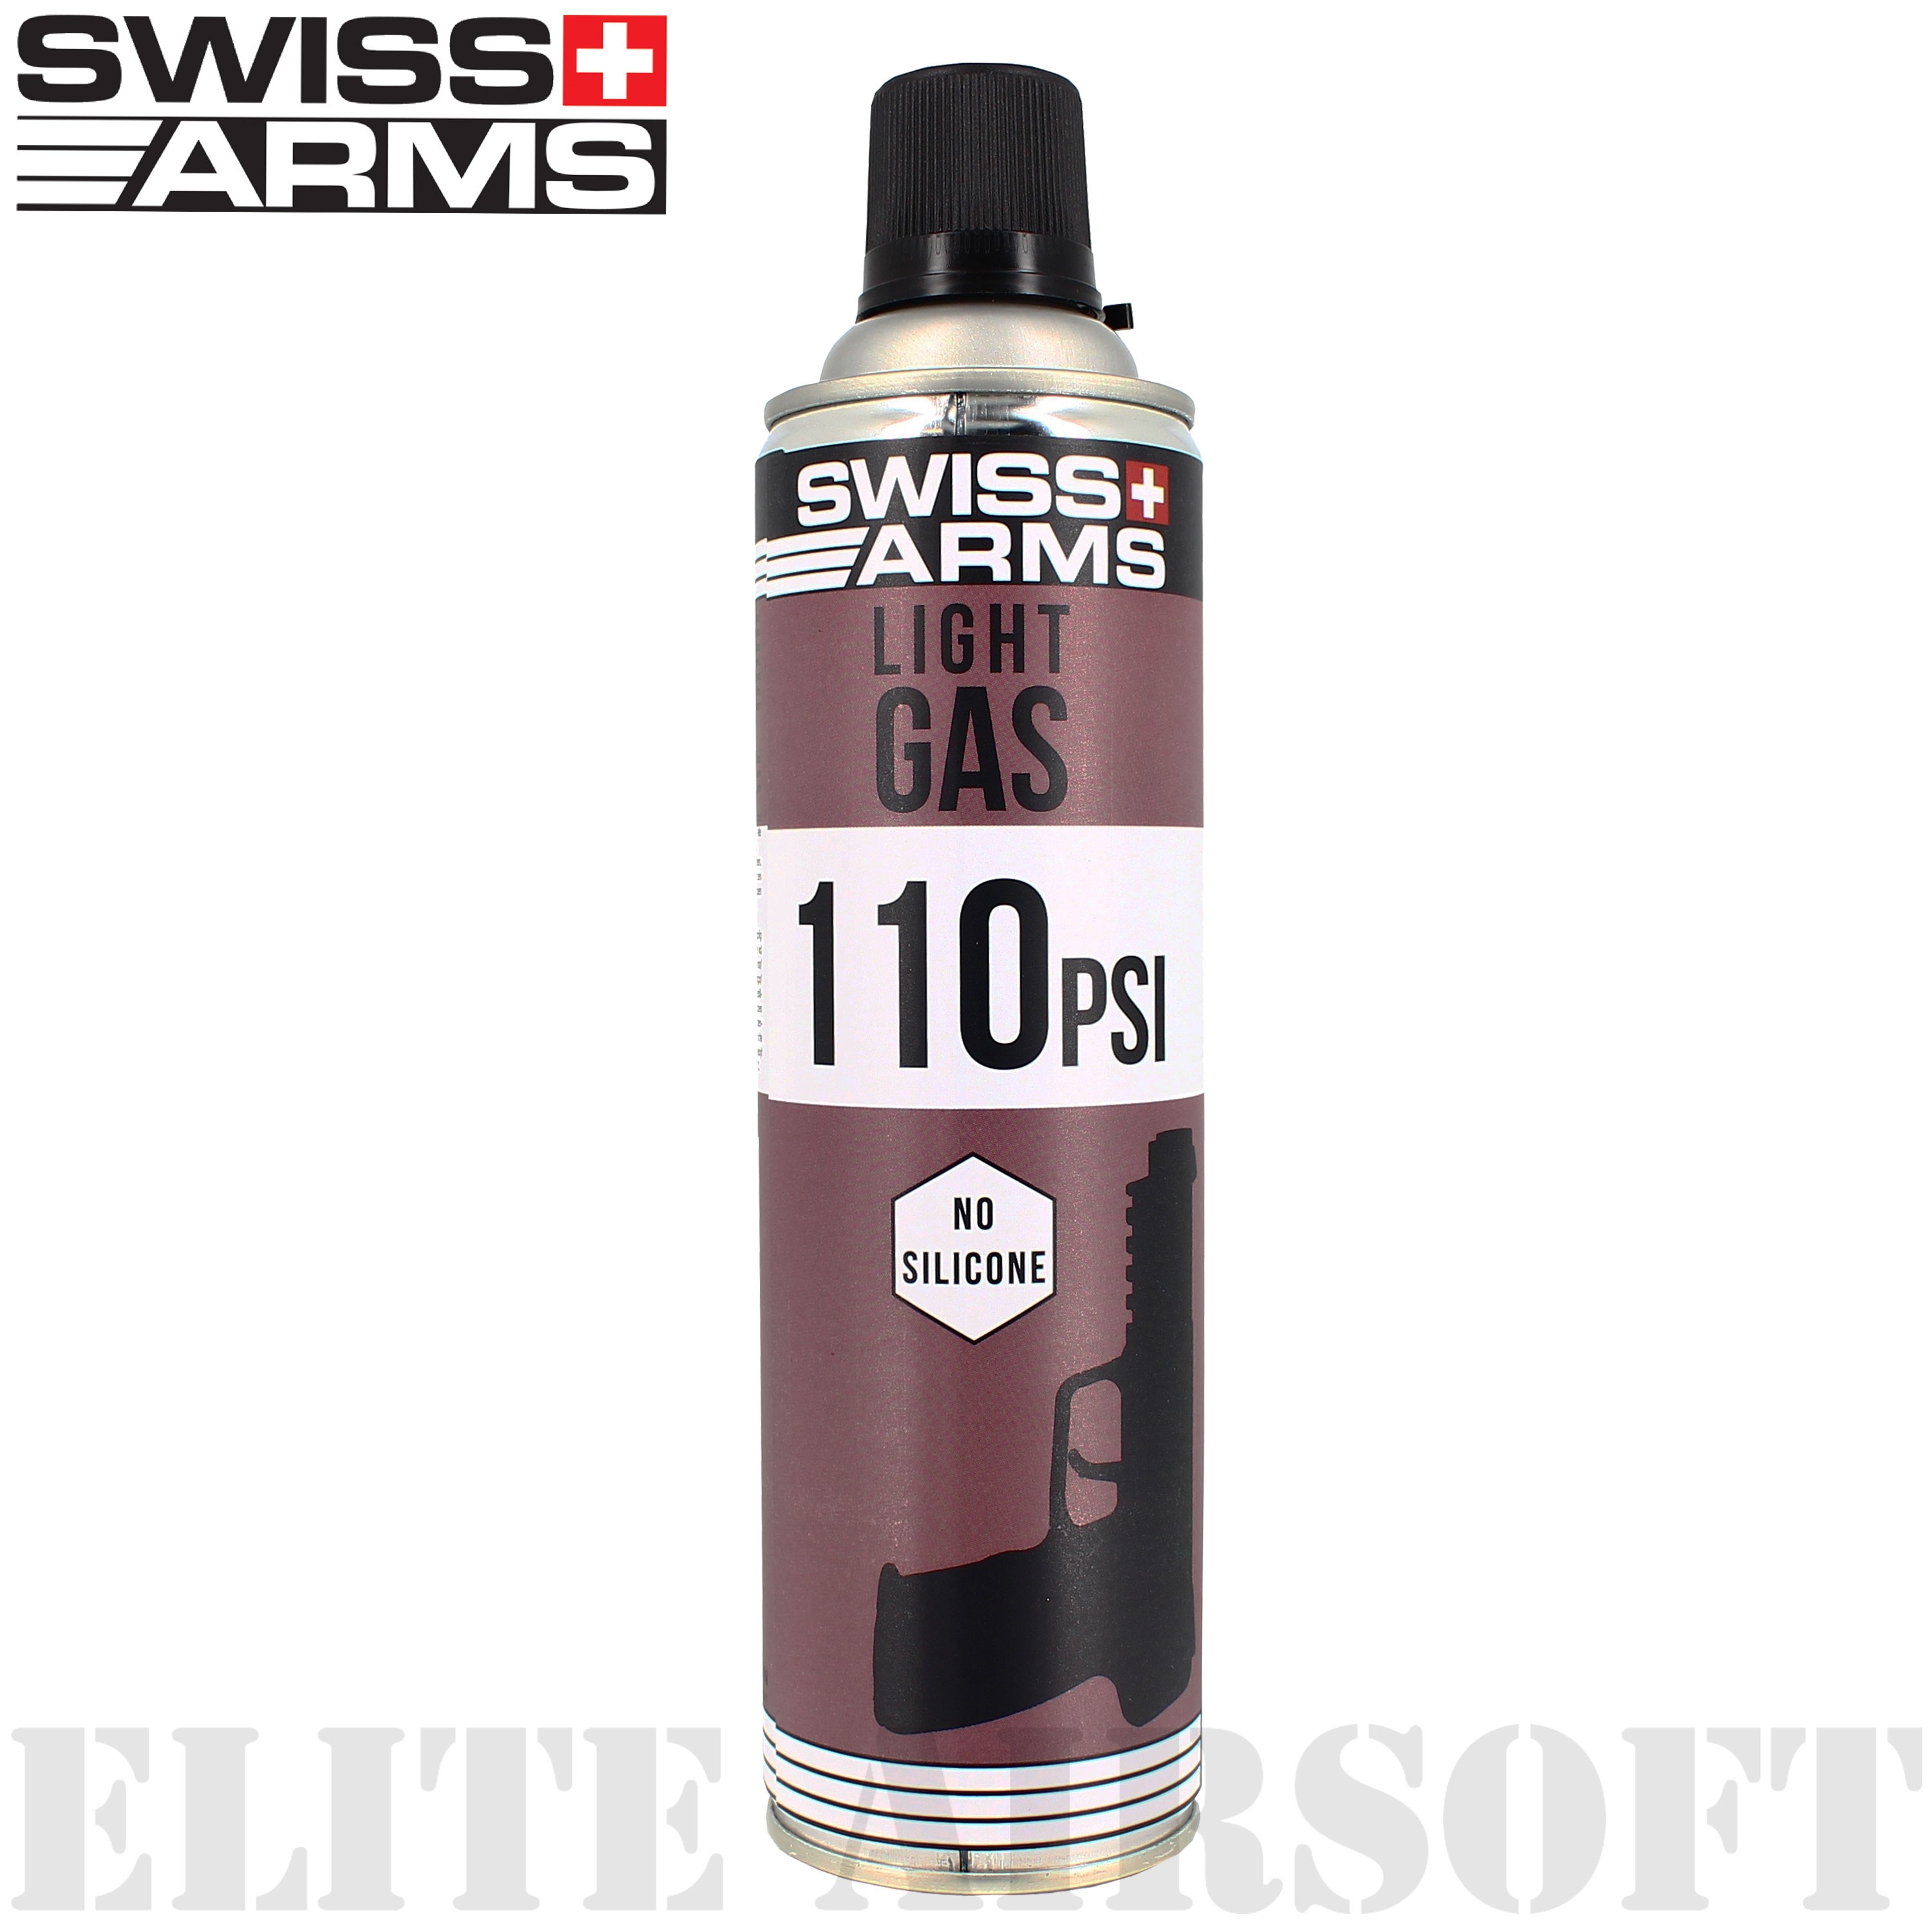 Swiss Arms - Bouteille de gaz 5-7 Light - 110 PSI - 600ml - Sec